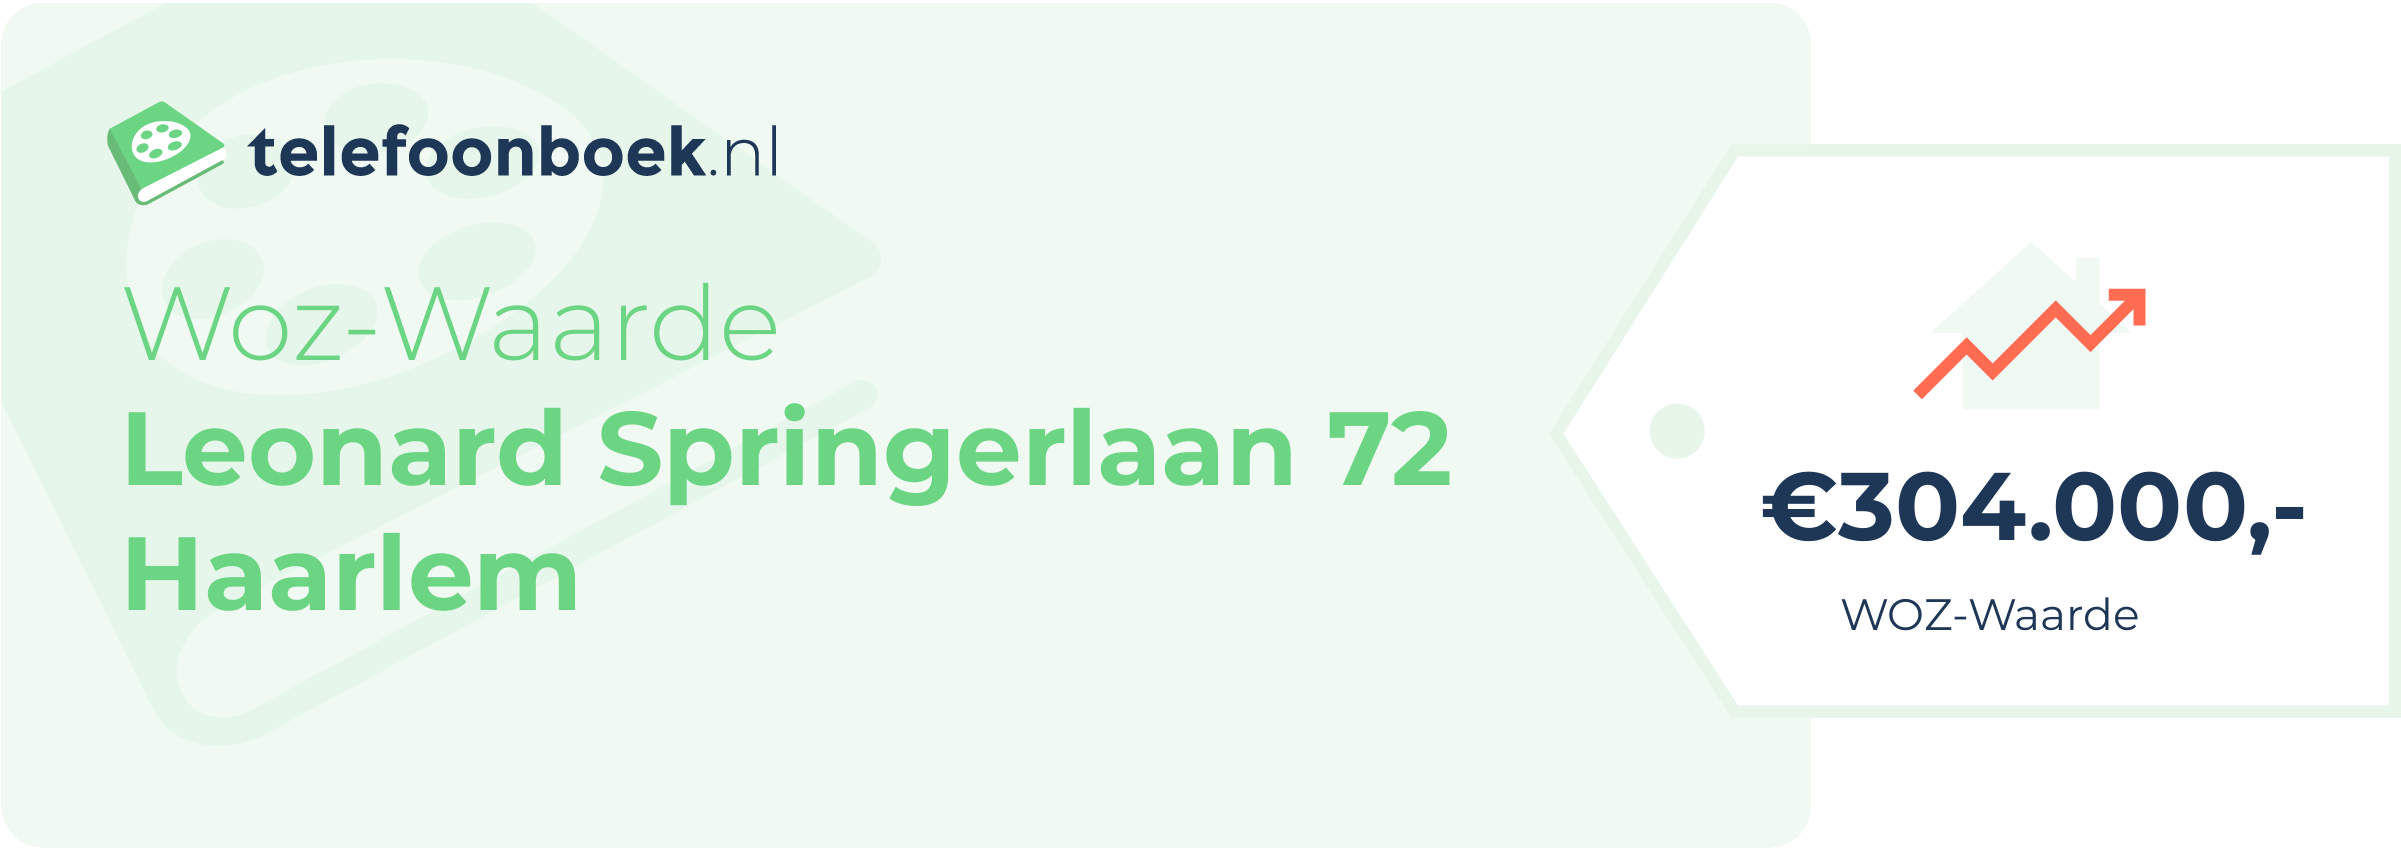 WOZ-waarde Leonard Springerlaan 72 Haarlem